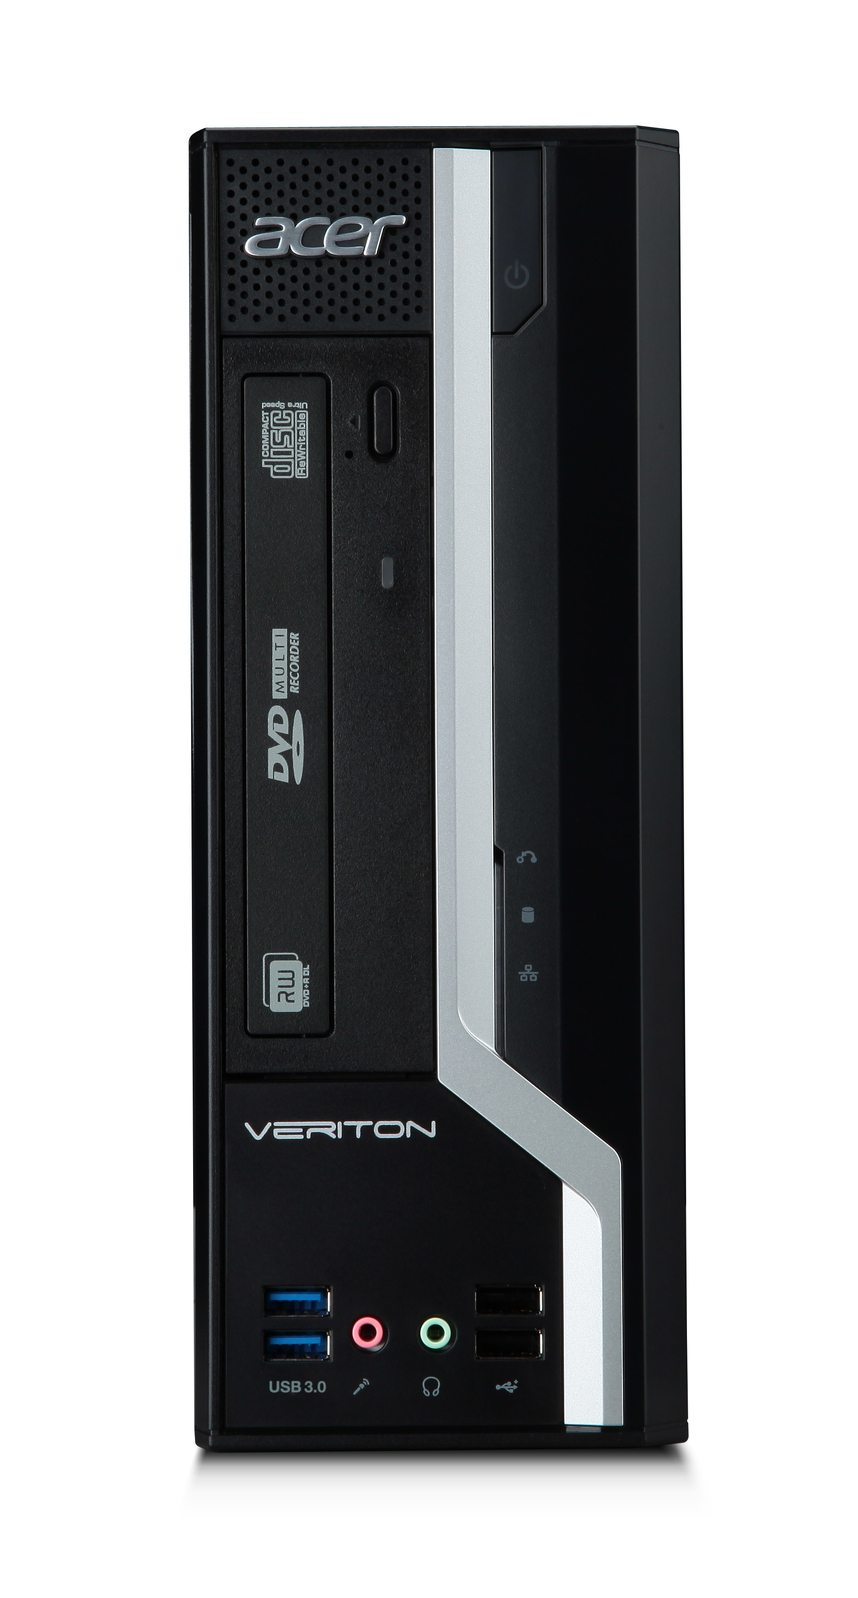 Acer Veriton X4630 SFF Intel i5 4460 3.20GHz 4GB RAM 160GB HDD NO OS